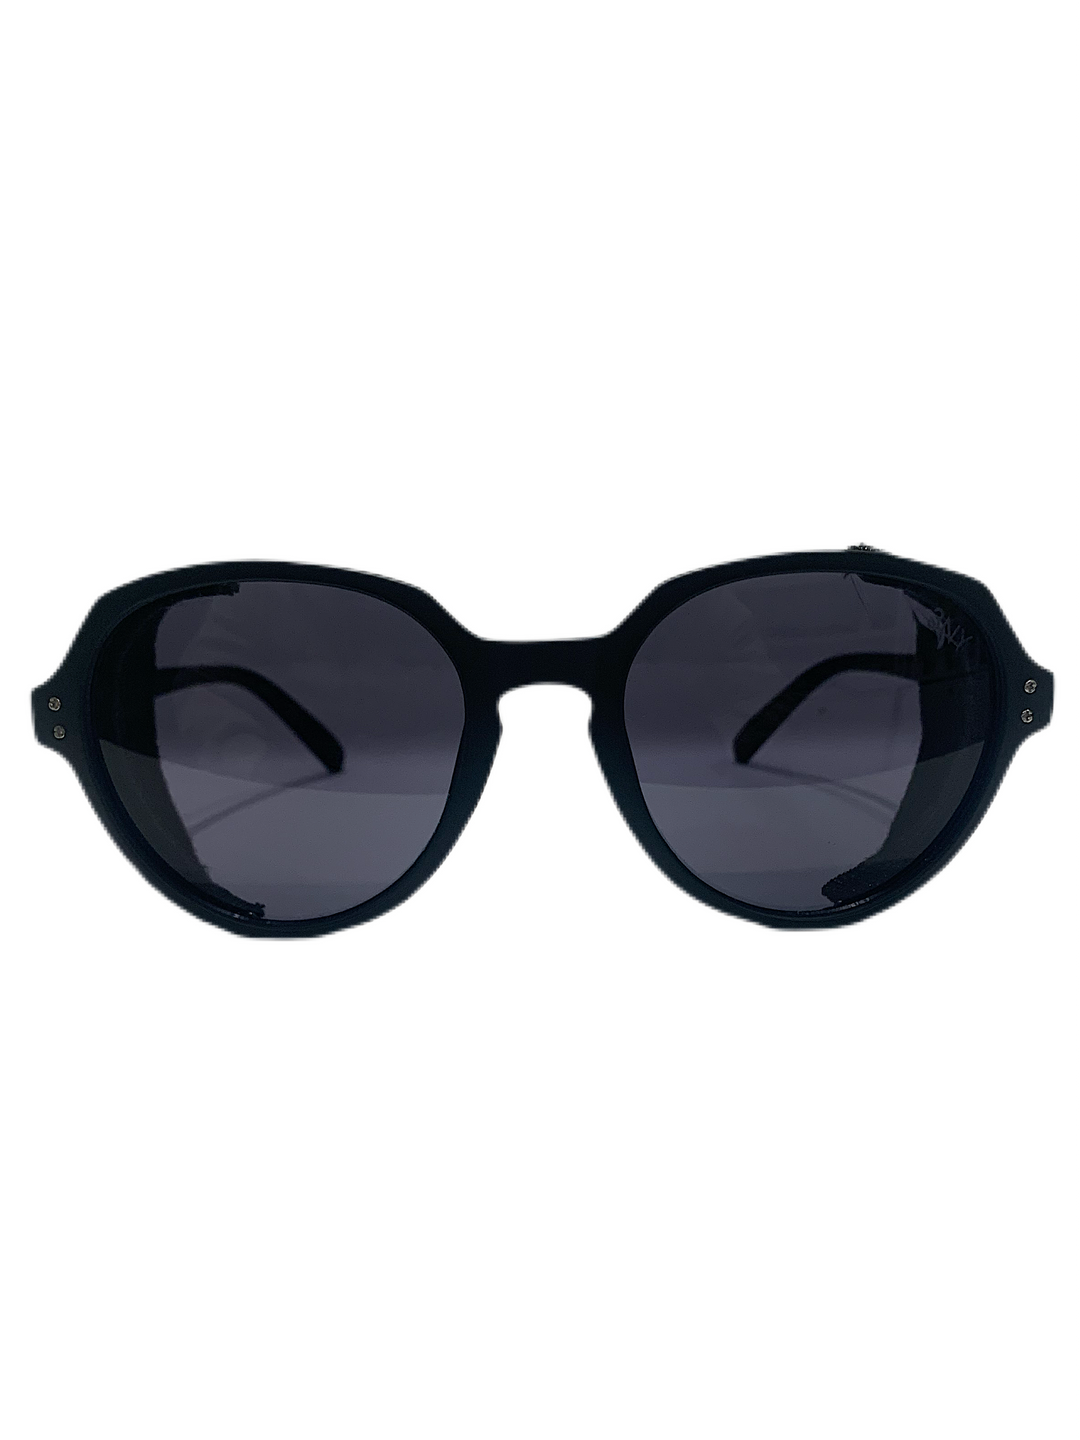 3NY - LANDARD 2.5 Sunglasses